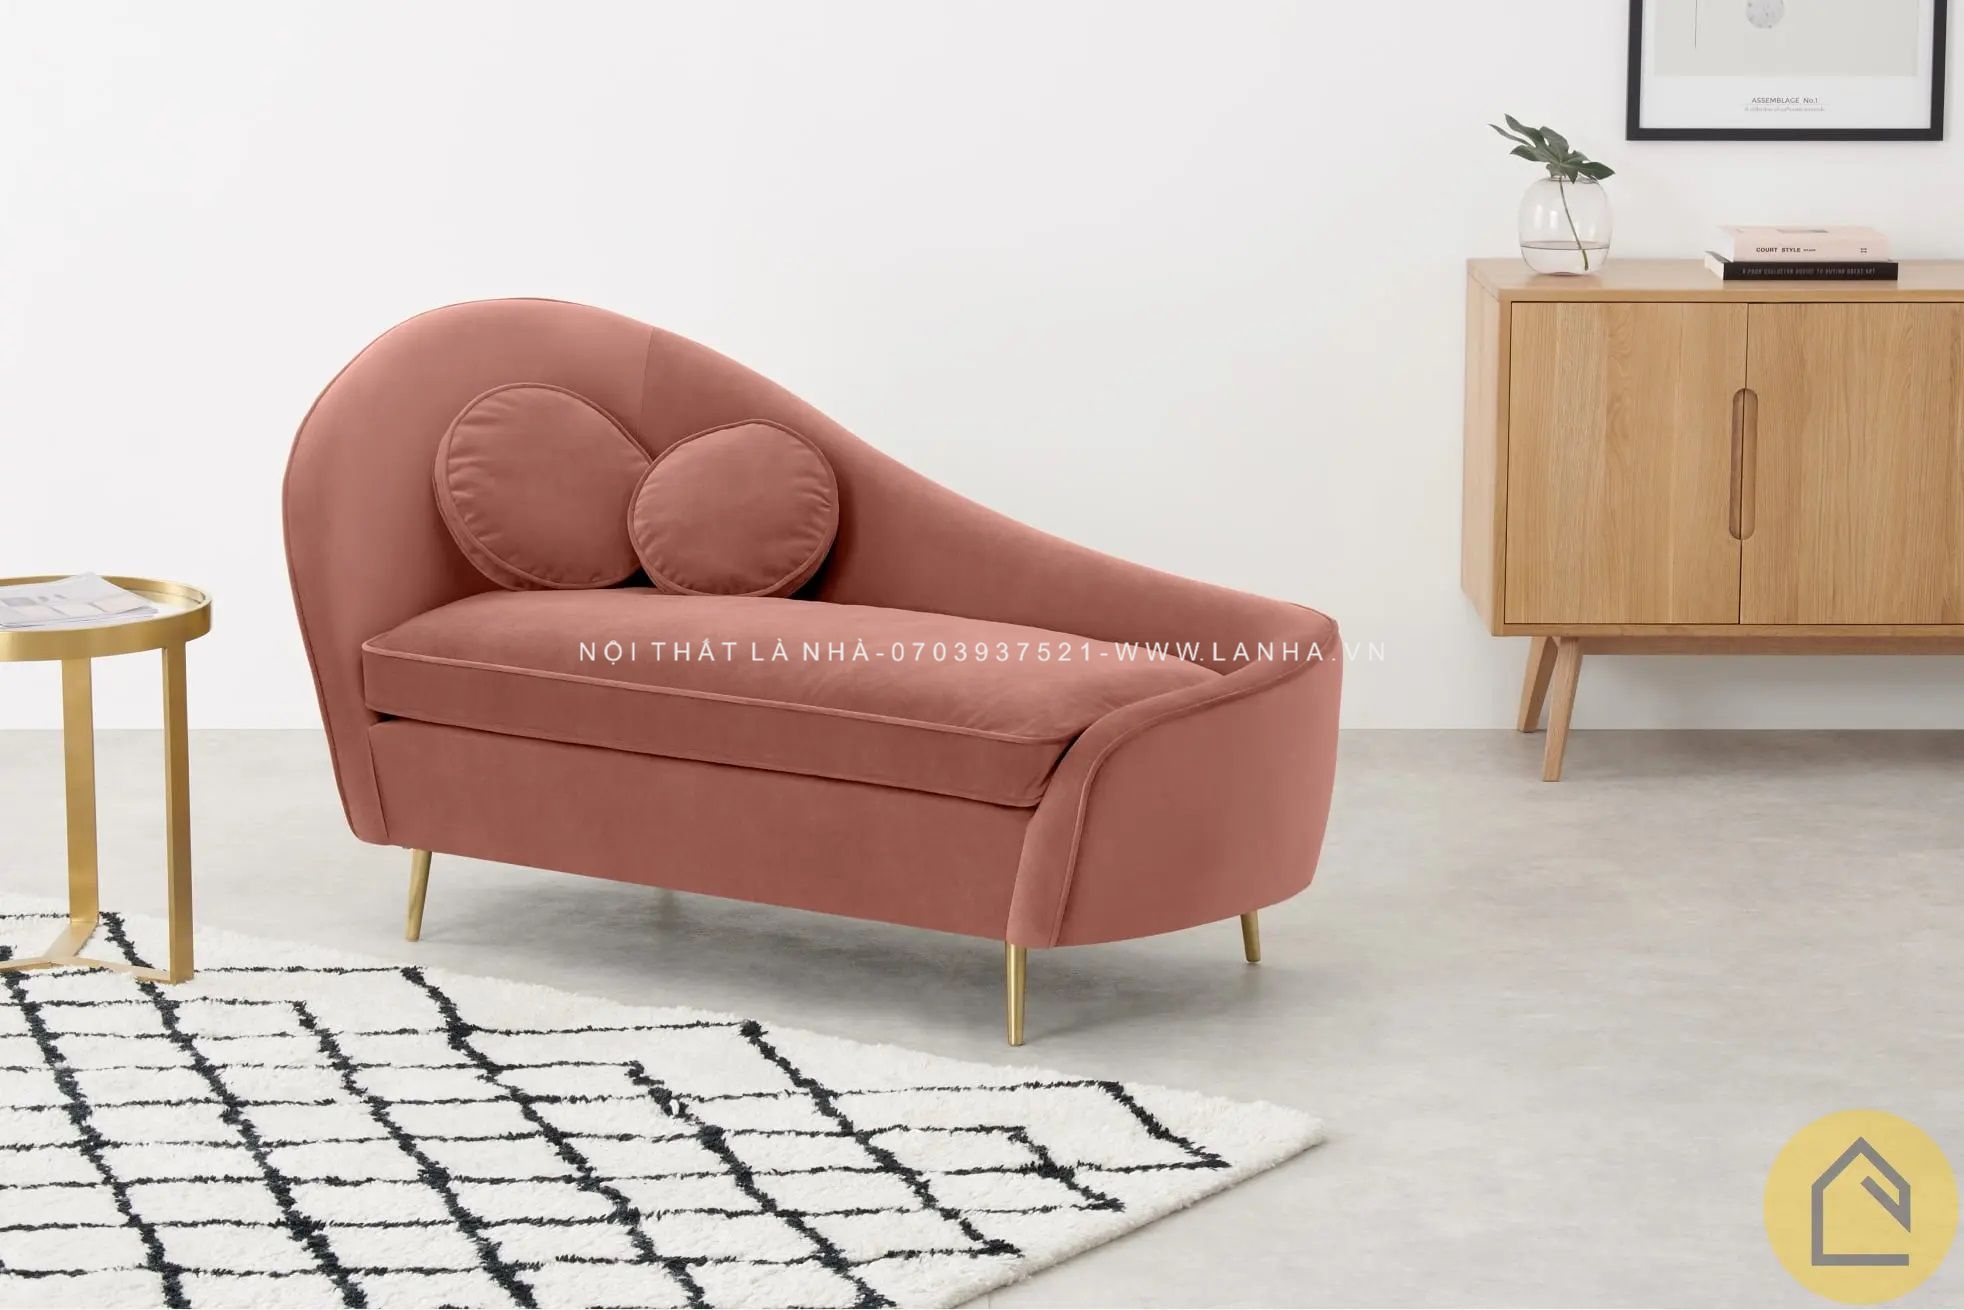 Những chiếc sofa thường mang đậm dấu ấn của thiết kế hiện đại, với những đường nét sáng tạo và màu sắc tươi sáng